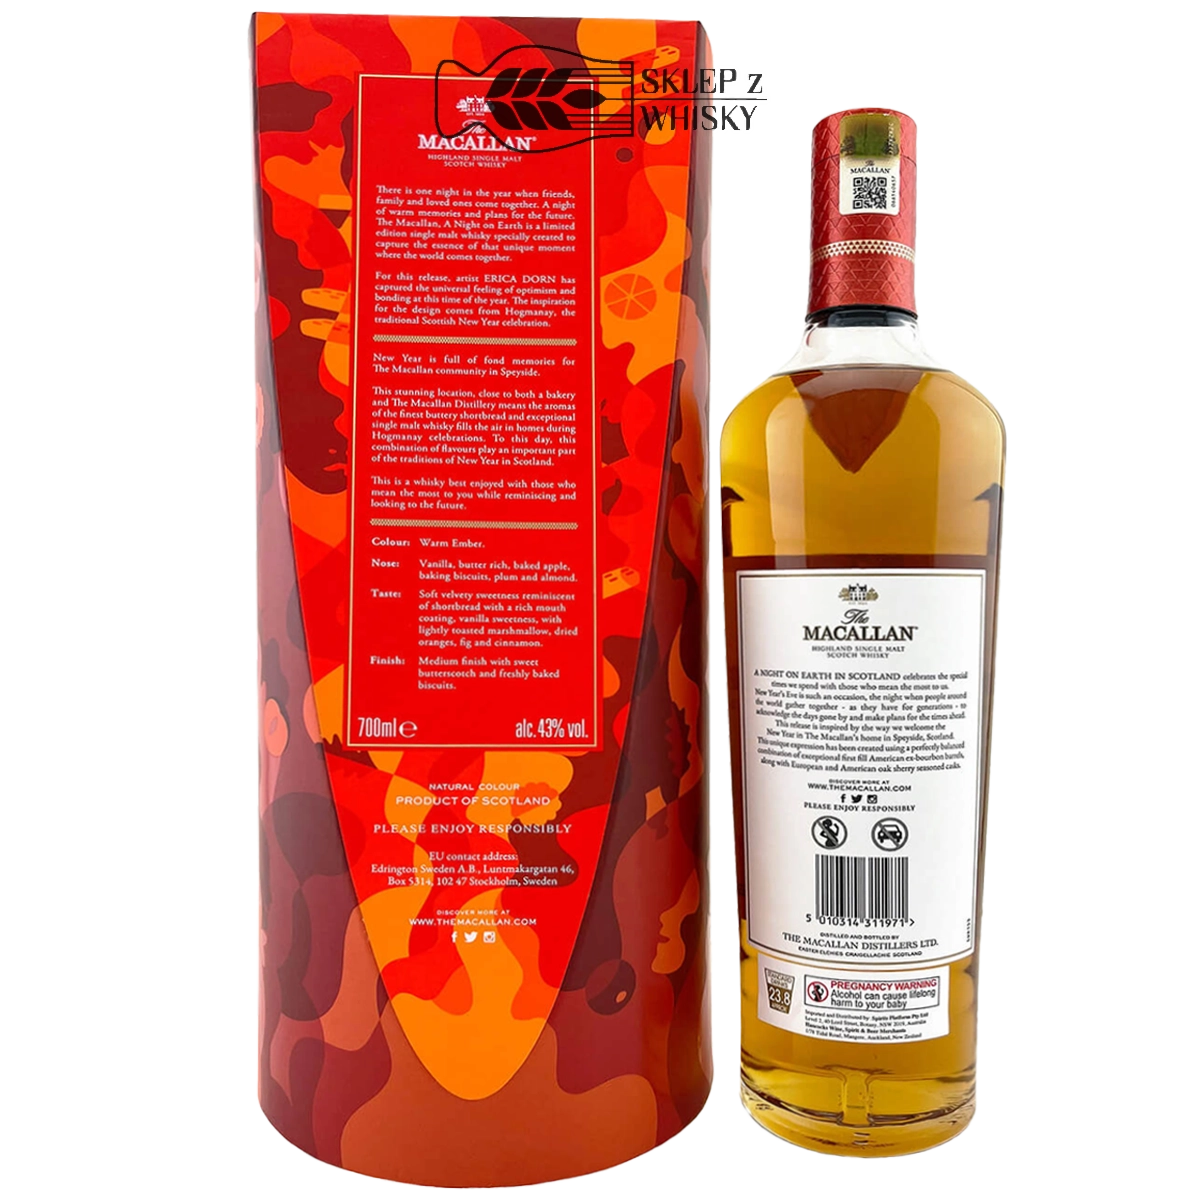 Macallan A Night On Earth - szkocka whisky single malt, z regionu speyside, 700 ml w eleganckim pudełku, od tyłu